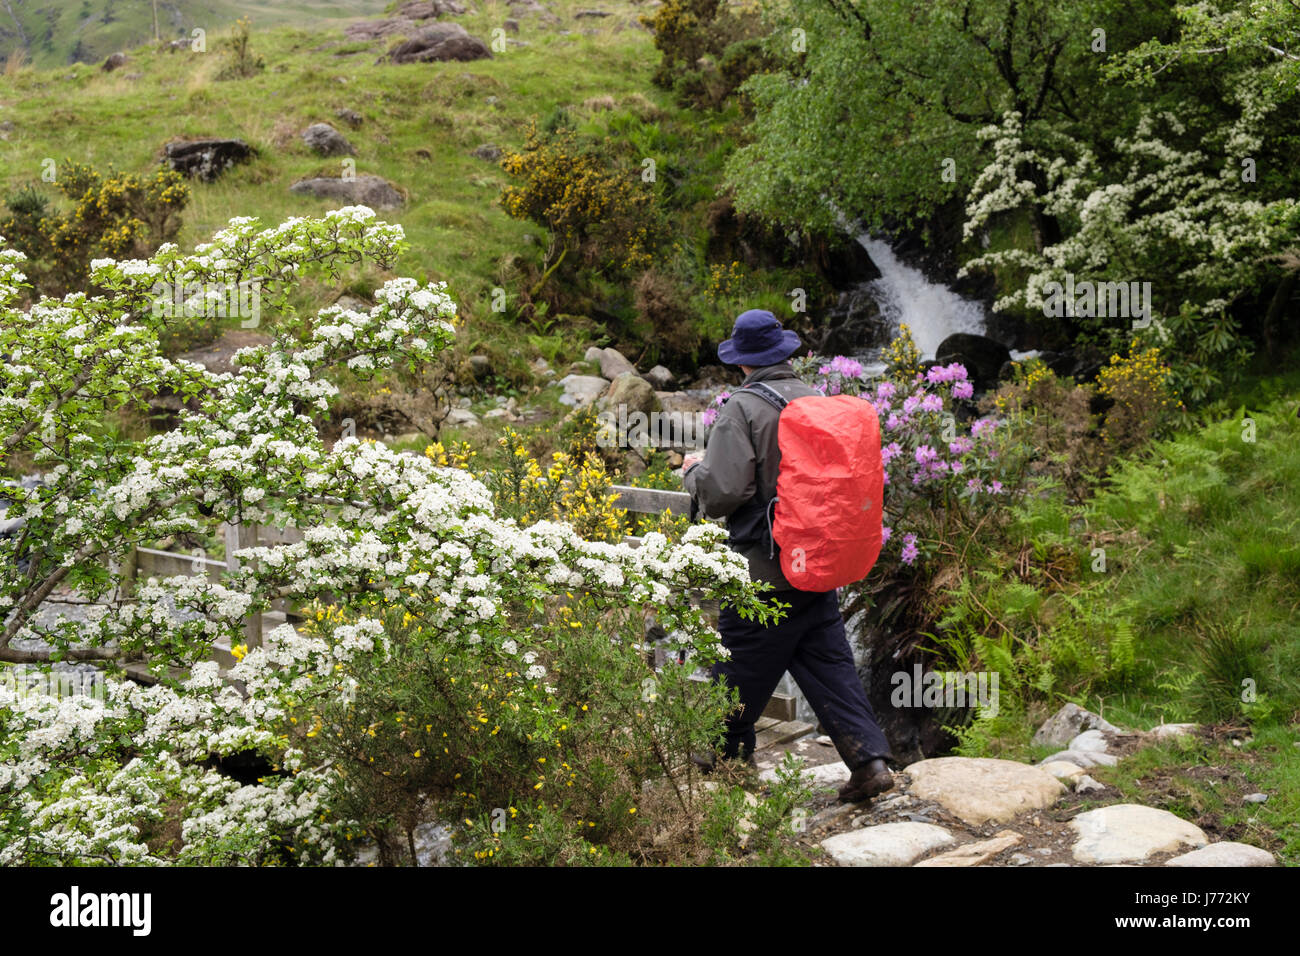 La floraison l'aubépine (Crataegus monogyna) Bush le long d'un sentier avec un randonneur randonnées au printemps. Mcg Dyli, Nant Gwynant, Gwynedd, Pays de Galles, Royaume-Uni, Angleterre Banque D'Images